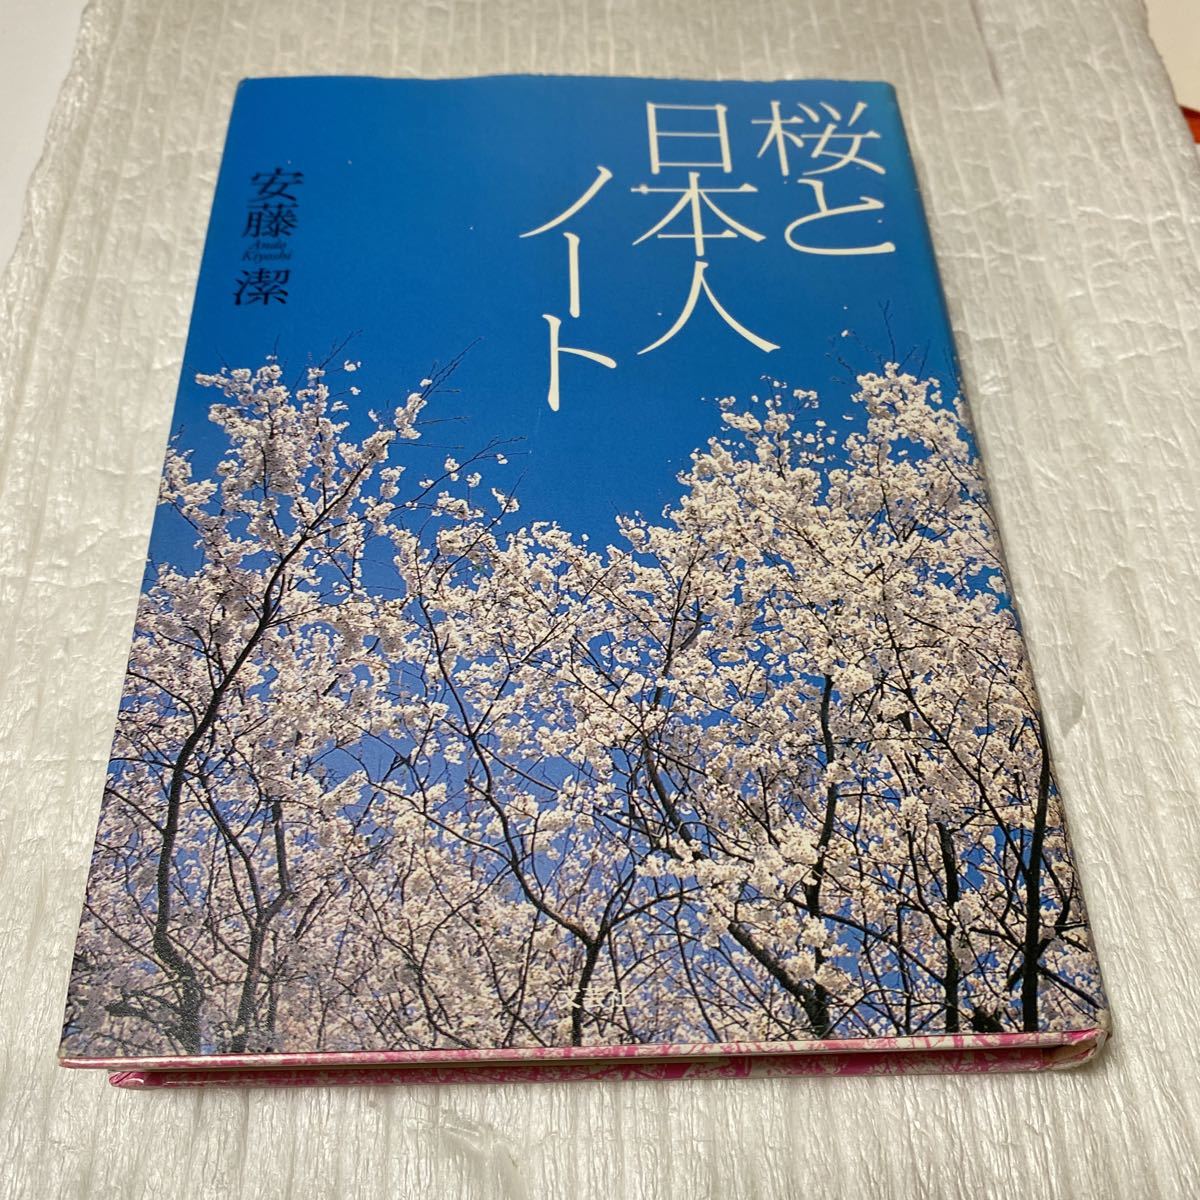 أزهار الكرز وملاحظات على الياباني / كيوشي أندو (مؤلف), تلوين, طلاء زيتي, طبيعة, رسم مناظر طبيعية